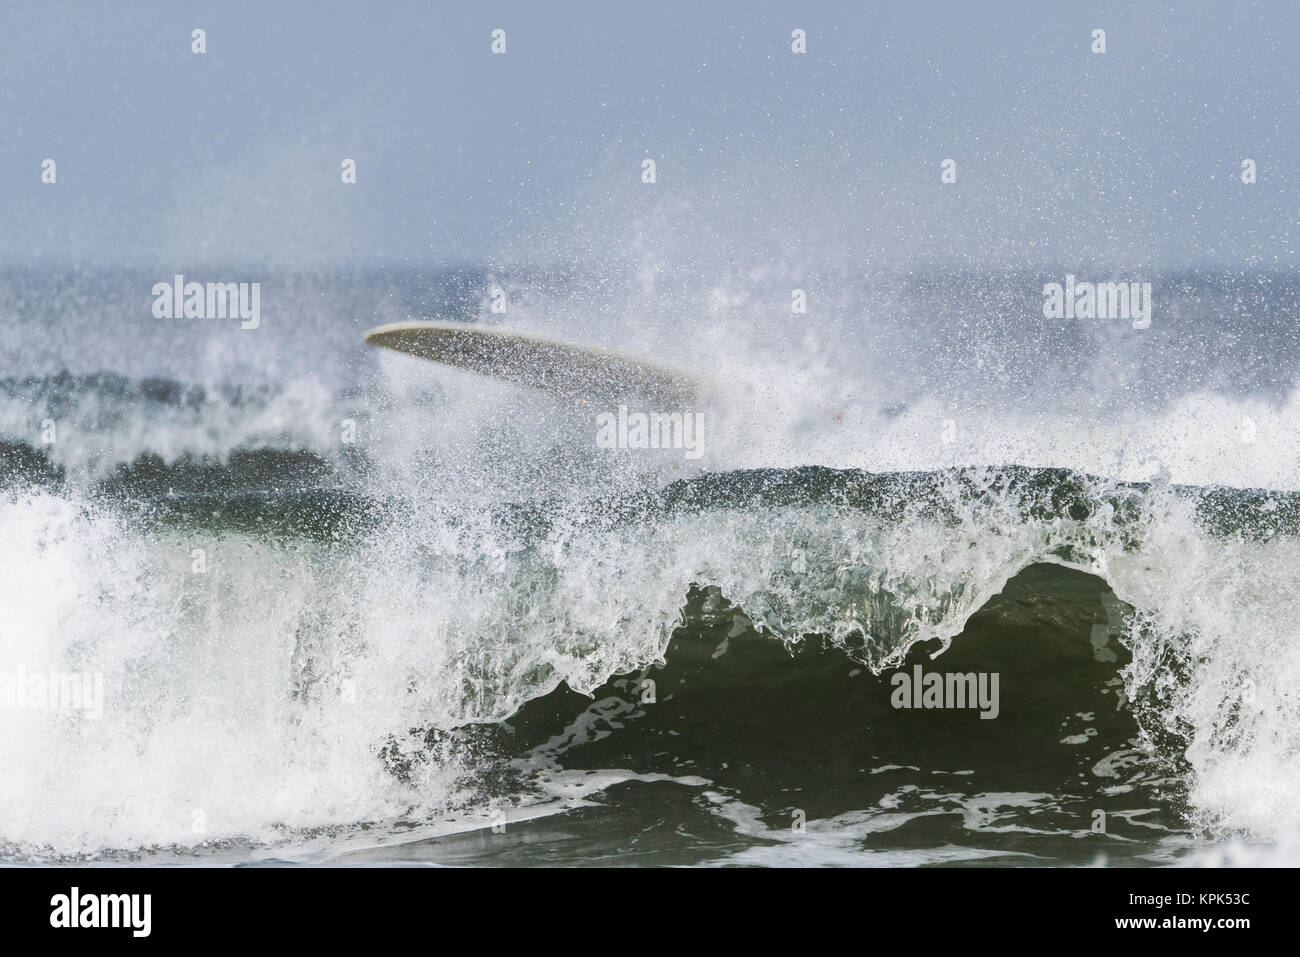 Onde che si infrangono e schiantarsi vicino a riva con una tavola da surf nella gli spruzzi di acqua sulla parte superiore della forma d'onda; Tofino, British Columbia, Canada Foto Stock